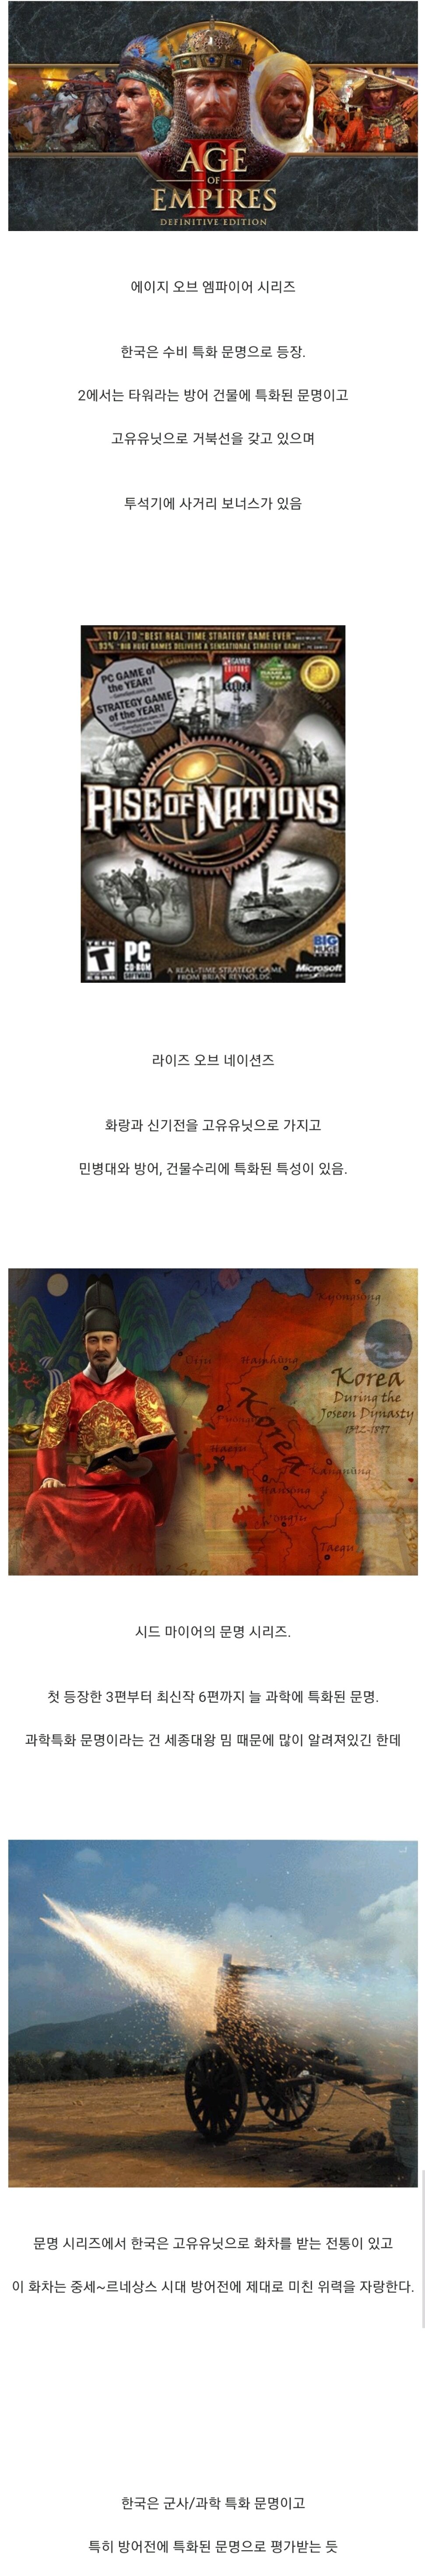 해외 전략게임으로 보는 한국의 종특.jpg